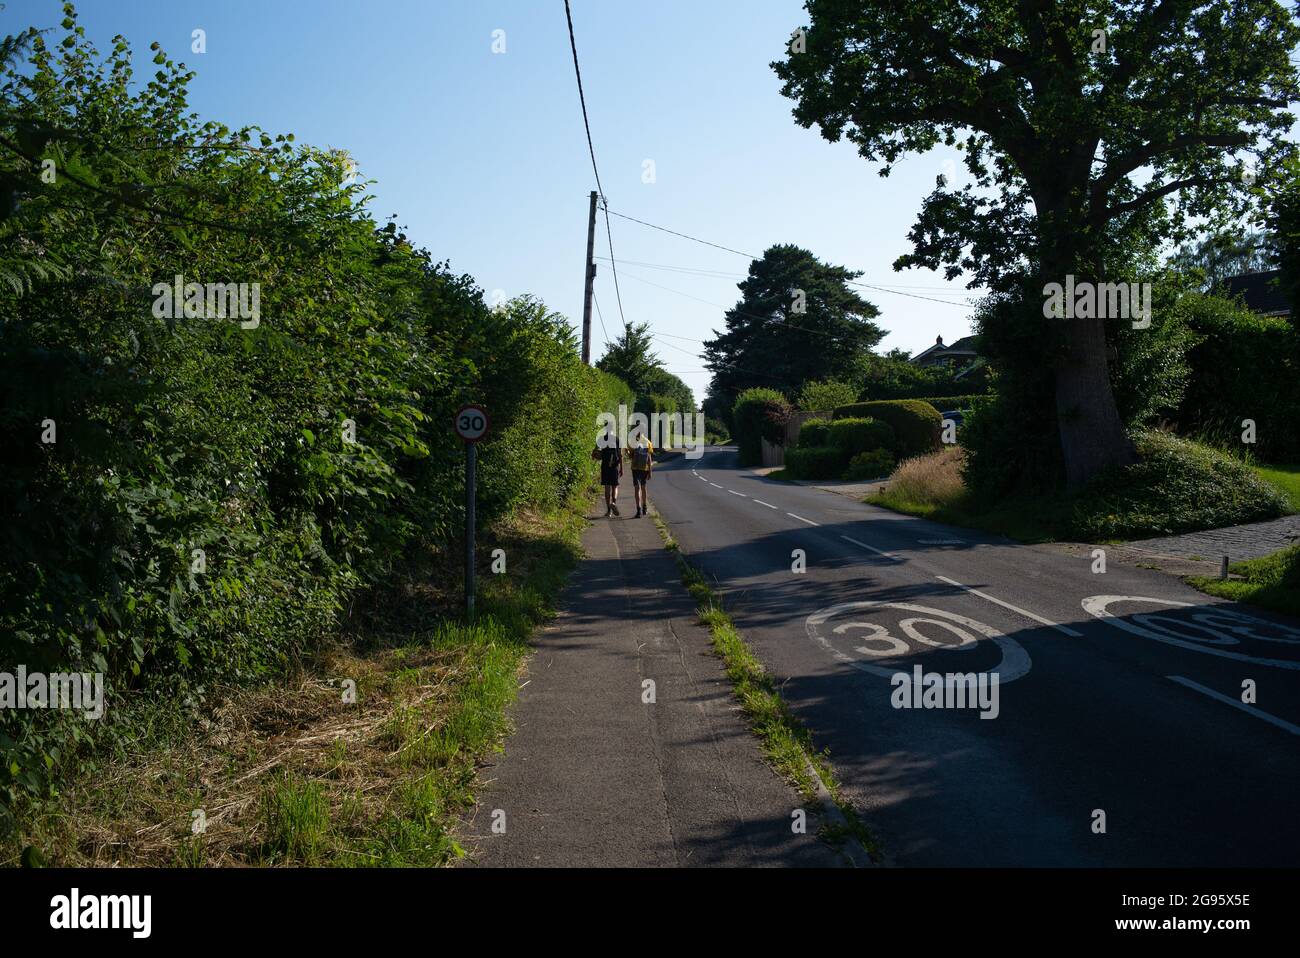 Dos adolescentes caminando por una tranquila carretera rural con 30mph señales de tráfico. La imagen muestra vivir un estilo de vida rural para los adolescentes. Foto de stock